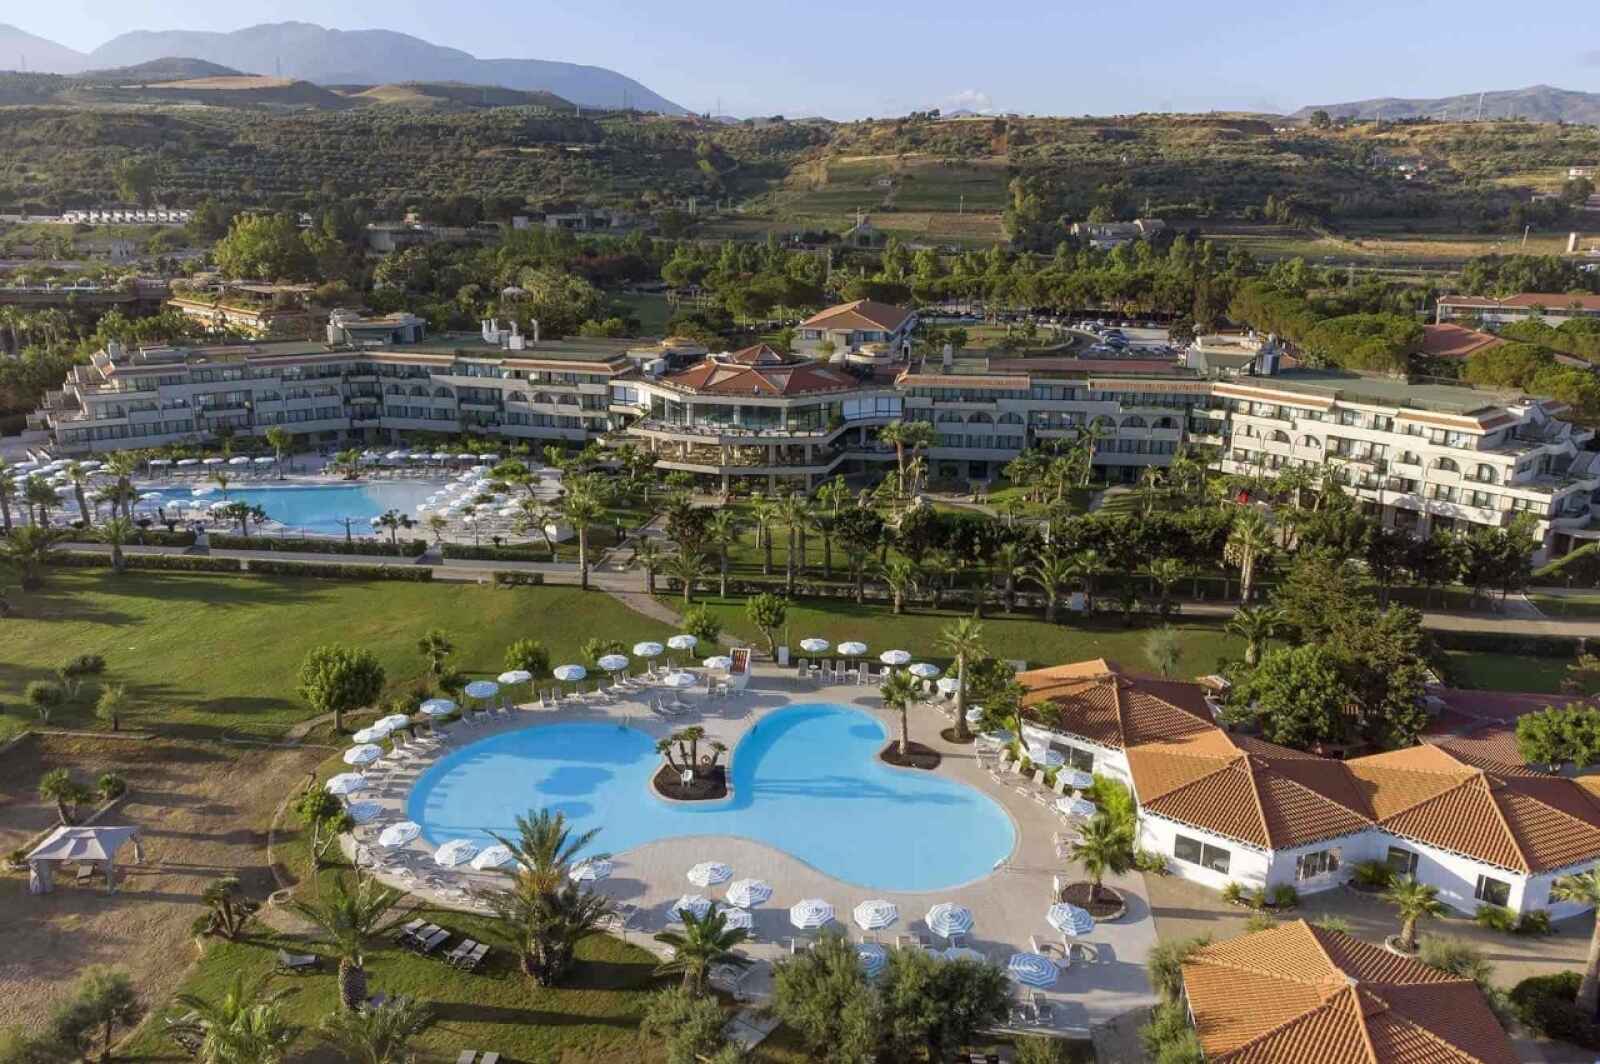 Italie - Sicile - Hotel Grand Palladium Sicilia Resort & Spa 5*